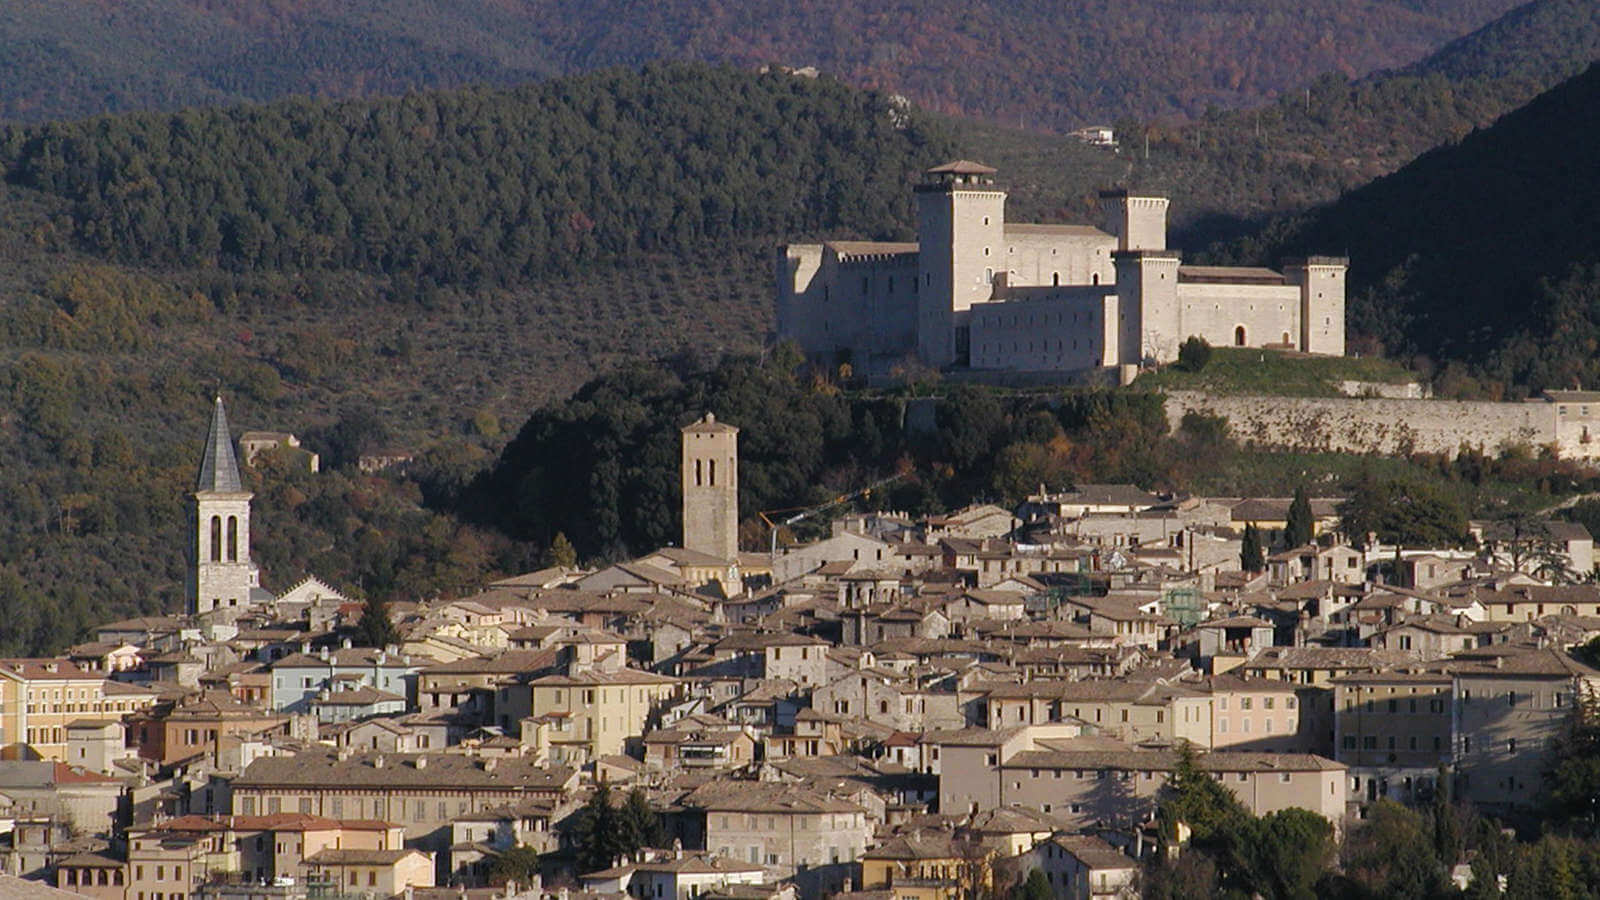 La Rocca di Spoleto